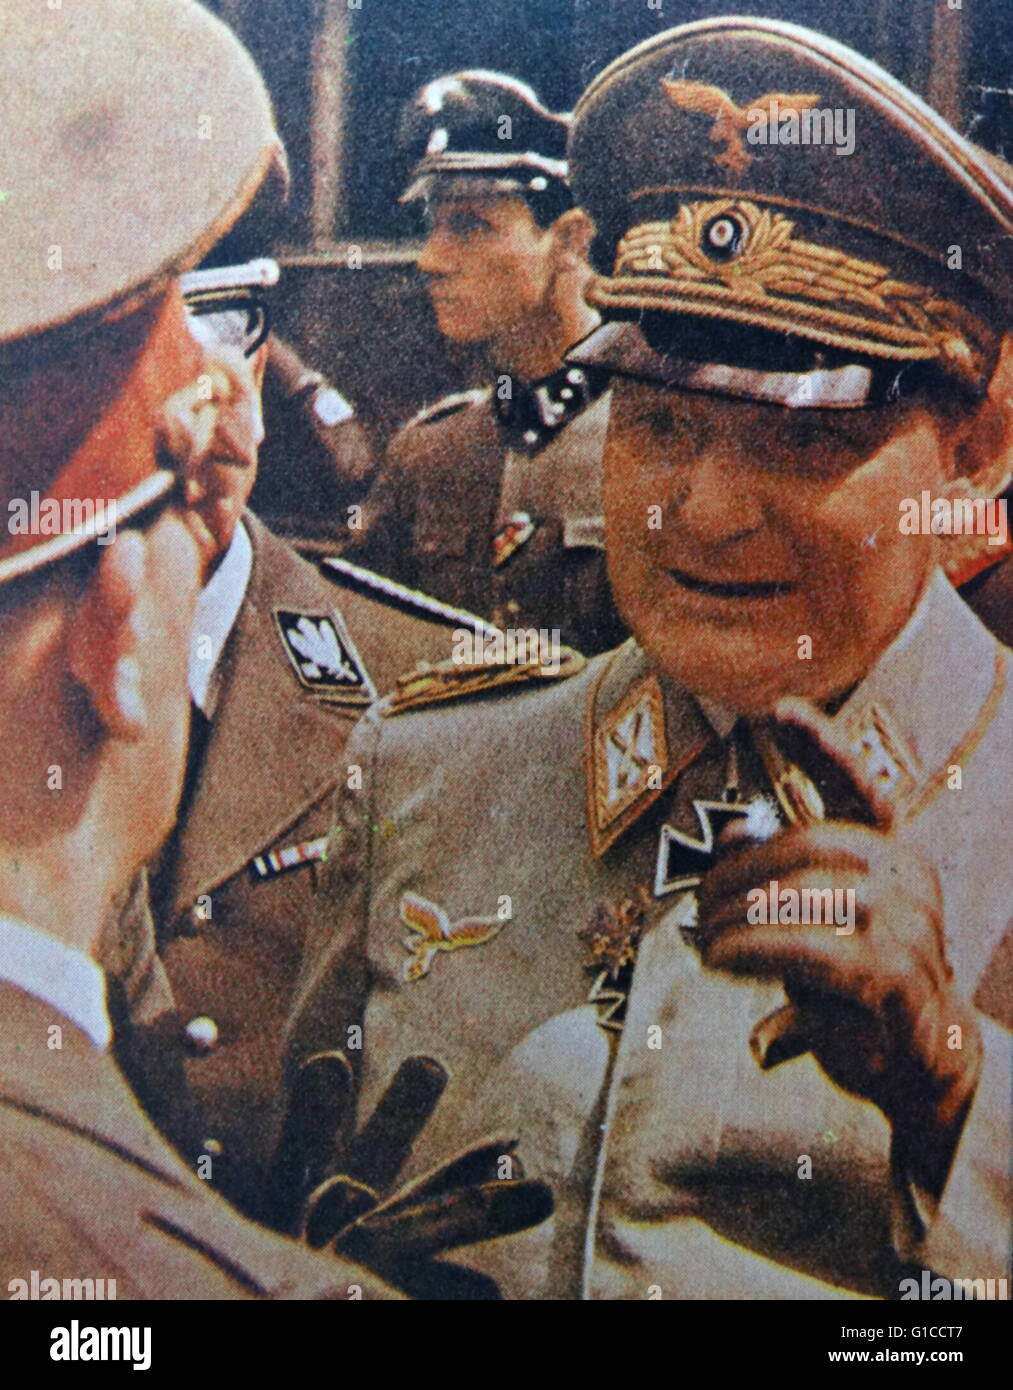 Photographie couleur de Hermann Wilhelm Göring (1893-1946) un homme politique allemand, chef militaire, et membre éminent du parti nazi. En date du 20e siècle Banque D'Images